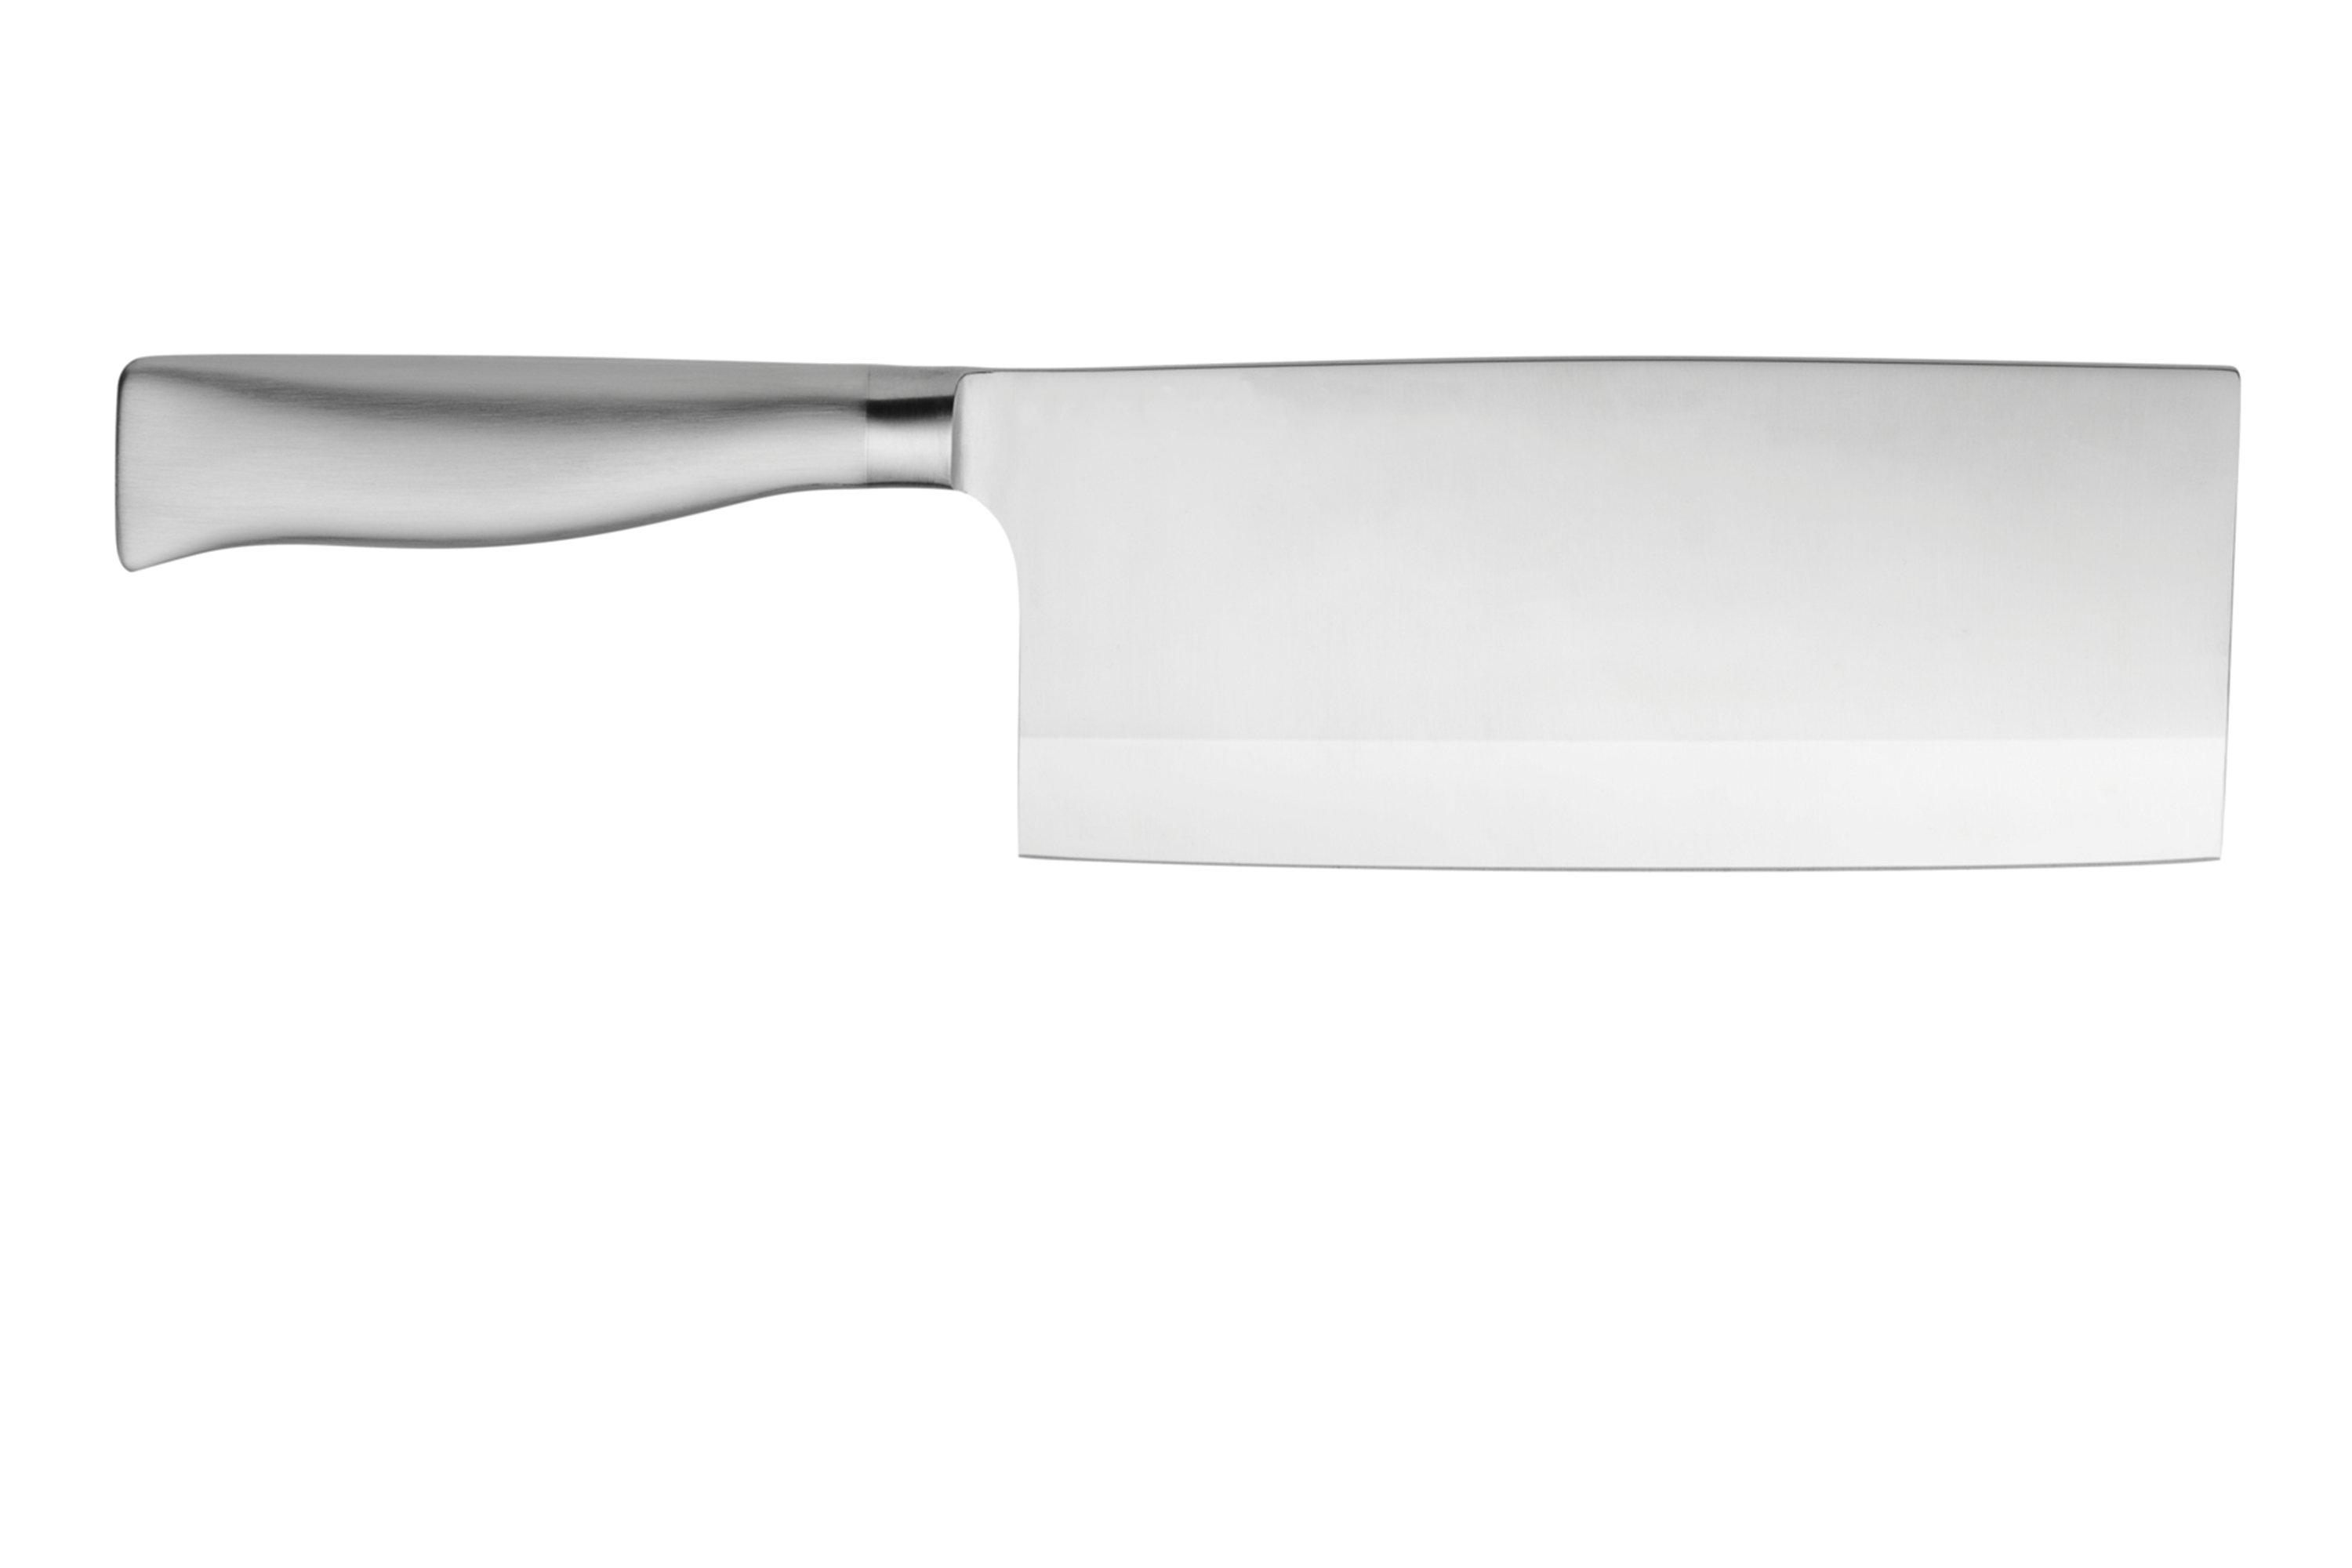 WMF Spitzenklasse Plus 1895516032 Chinese cleaver, 17 cm